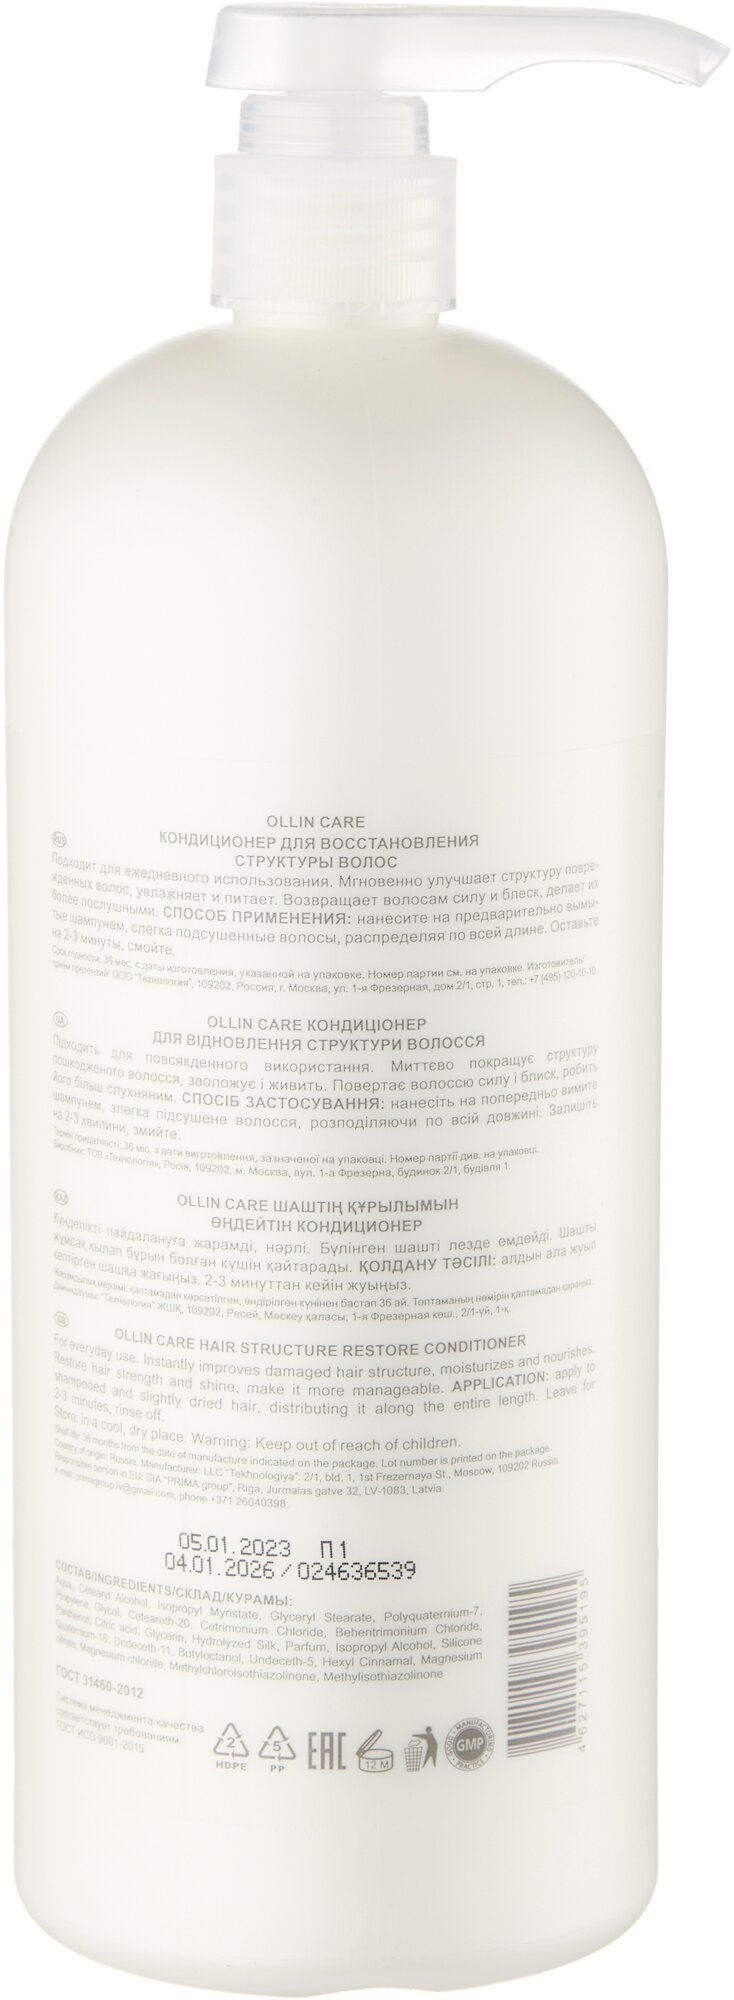 Ollin Professional Conditioner Кондиционер для восстановления структуры волос 200 мл (Ollin Professional, ) - фото №2